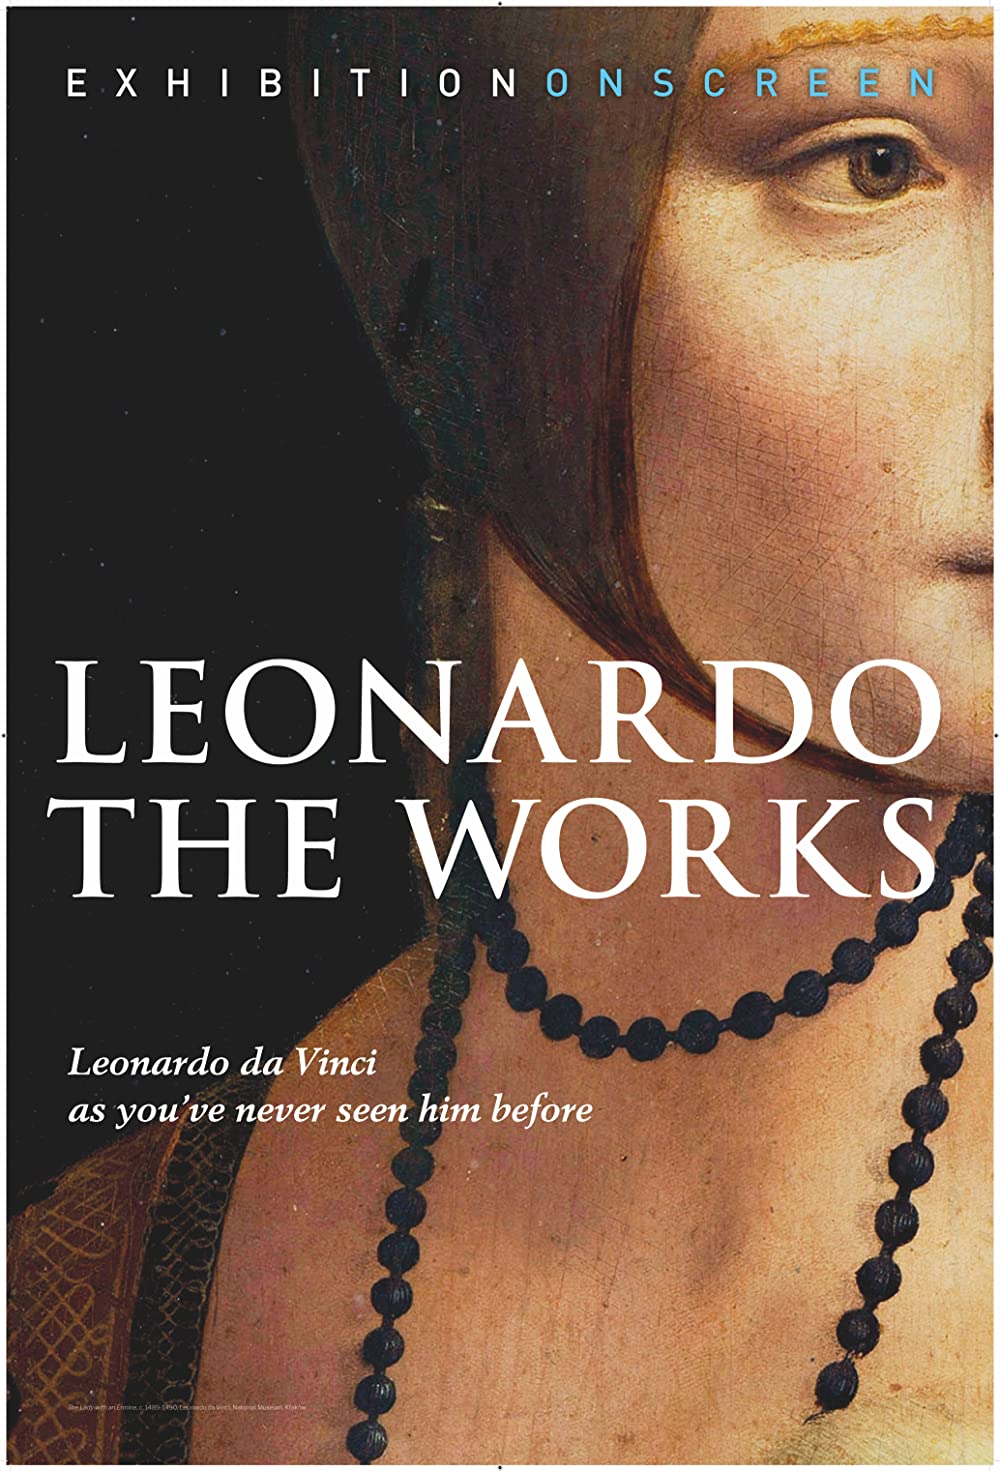 Filmbeschreibung zu Exhibition on Screen: Leonardo